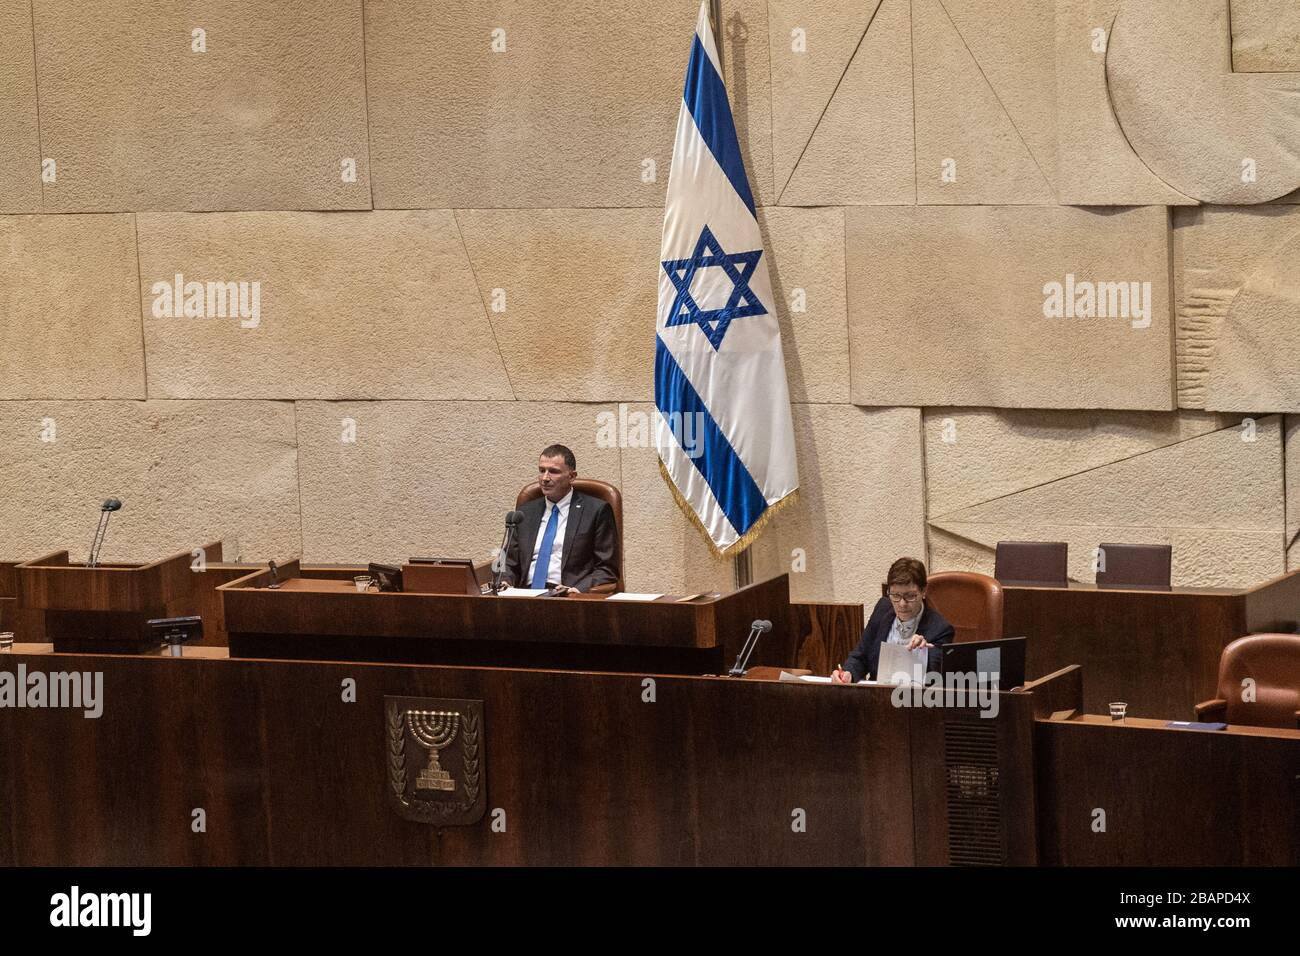 Bilder der israelischen Premierminister in der Knesset-Einameral-nationalen Legislative Israels Stockfoto